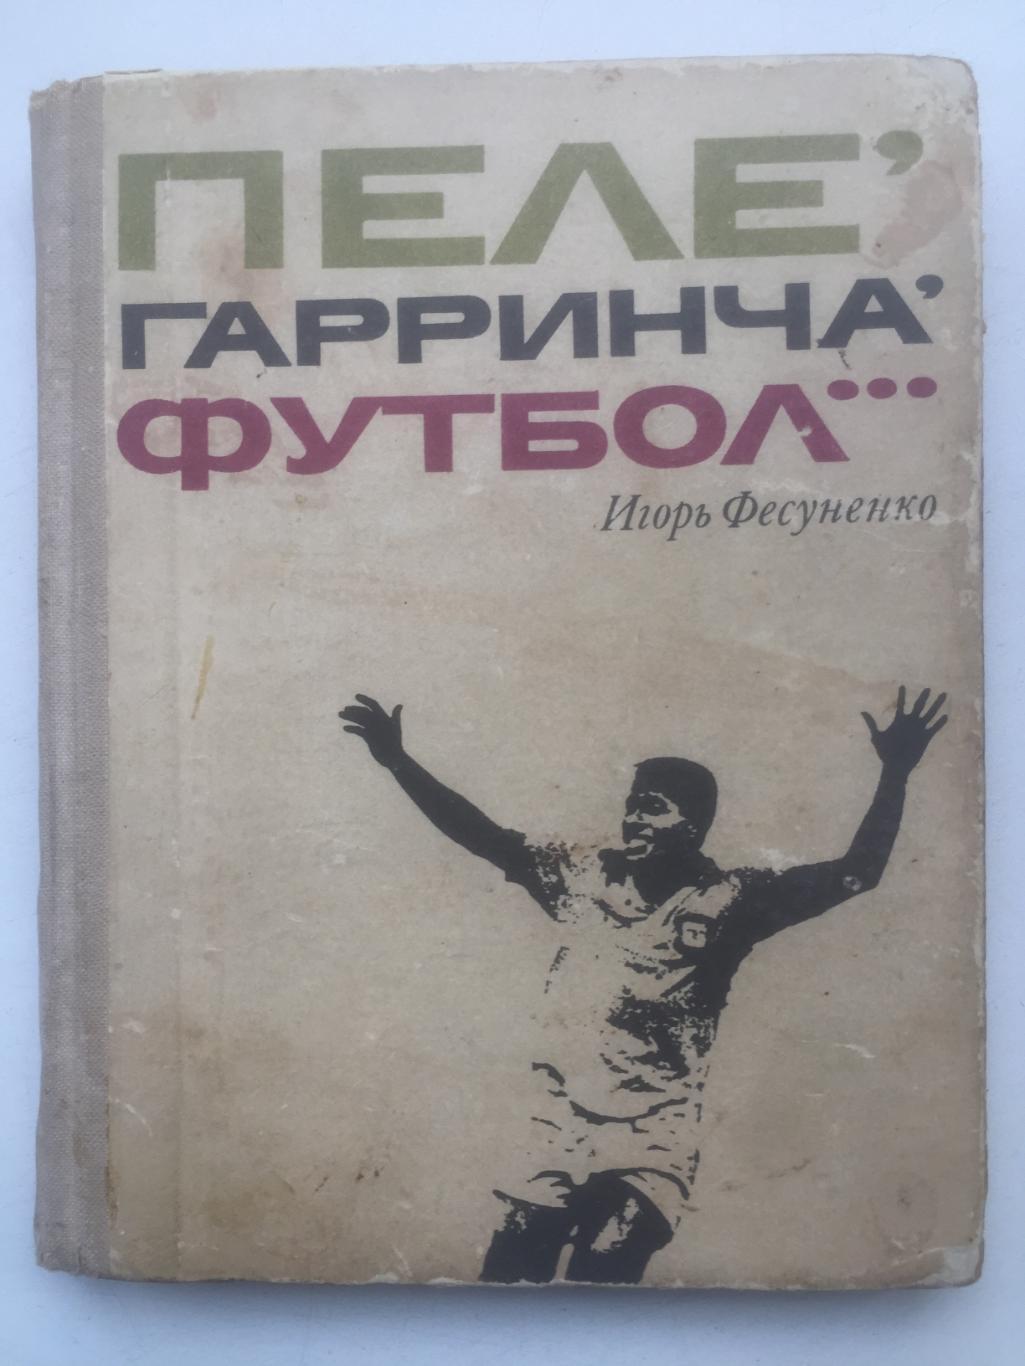 Игорь Фесуненко Пеле, Гарринча, футбол... ФиС 1970